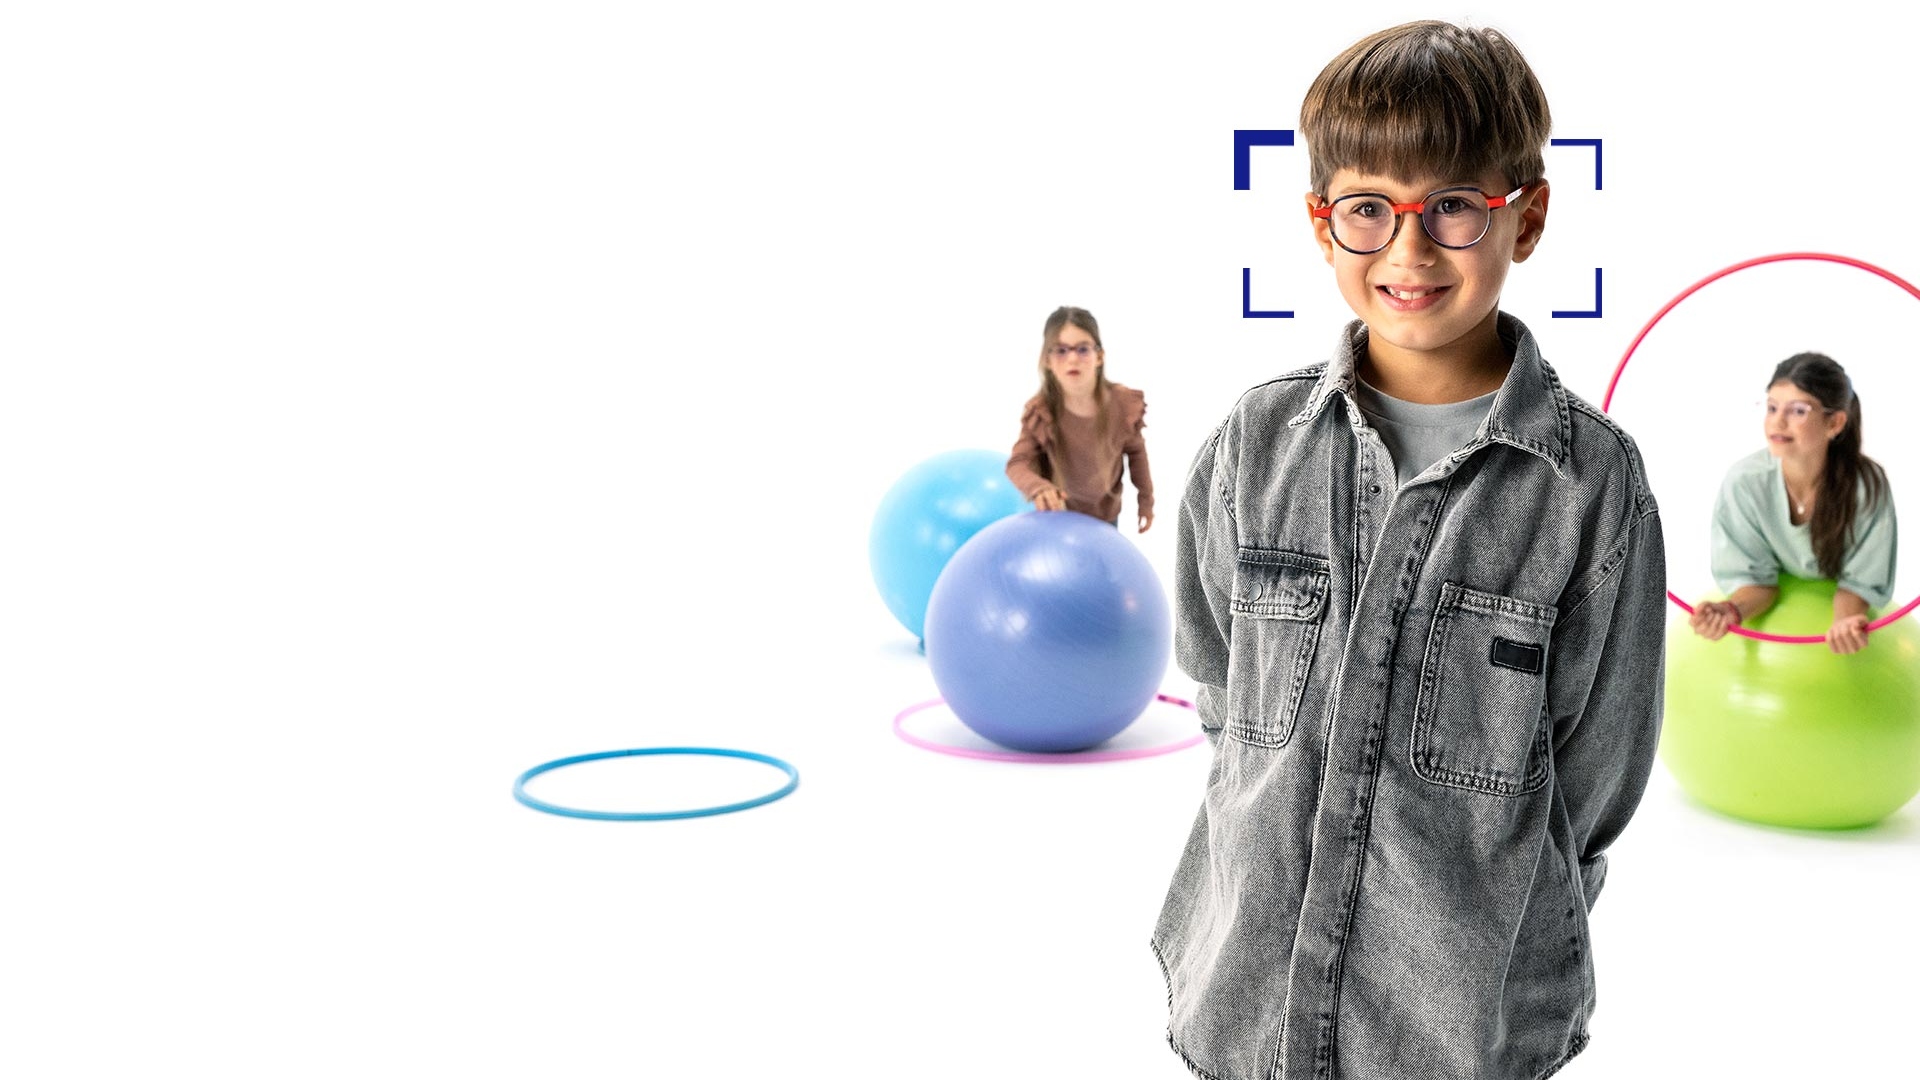 Barna hajú, kerek szemüveget és ZEISS MyoCare szemüveglencsét viselő kisfiú, aki az előtérben áll, és a kamerába mosolyog. A háttérben két ZEISS MyoCare szemüveglencsét viselő kislány játszik hulahoppkarikákkal és gimnasztikai labdákkal.